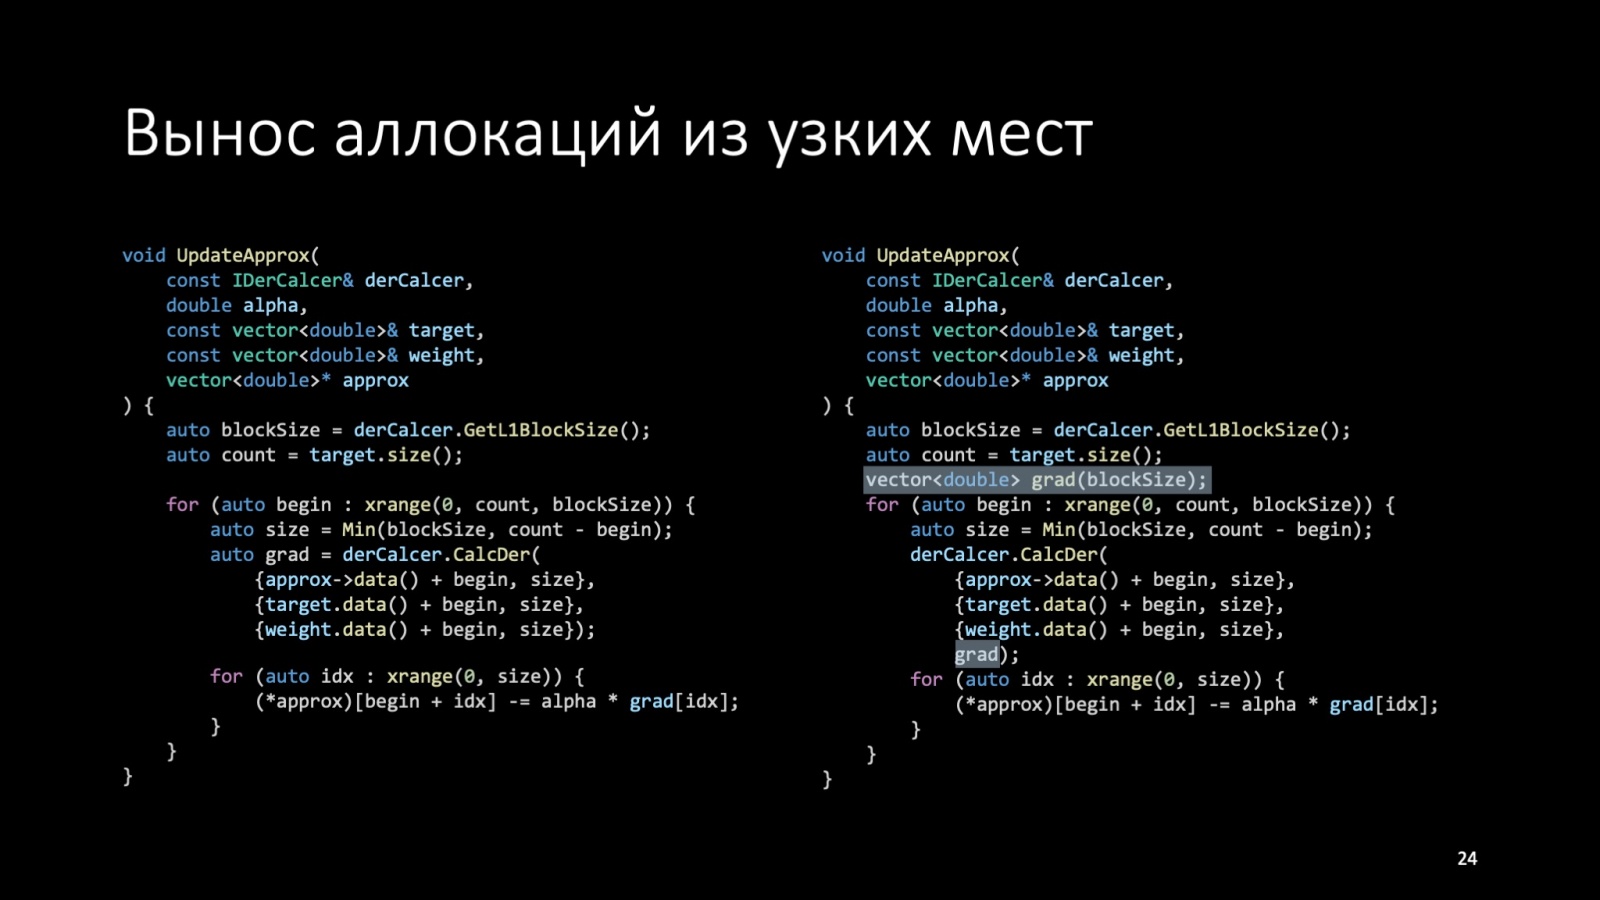 Оптимизация C++: совмещаем скорость и высокий уровень. Доклад Яндекса - 24